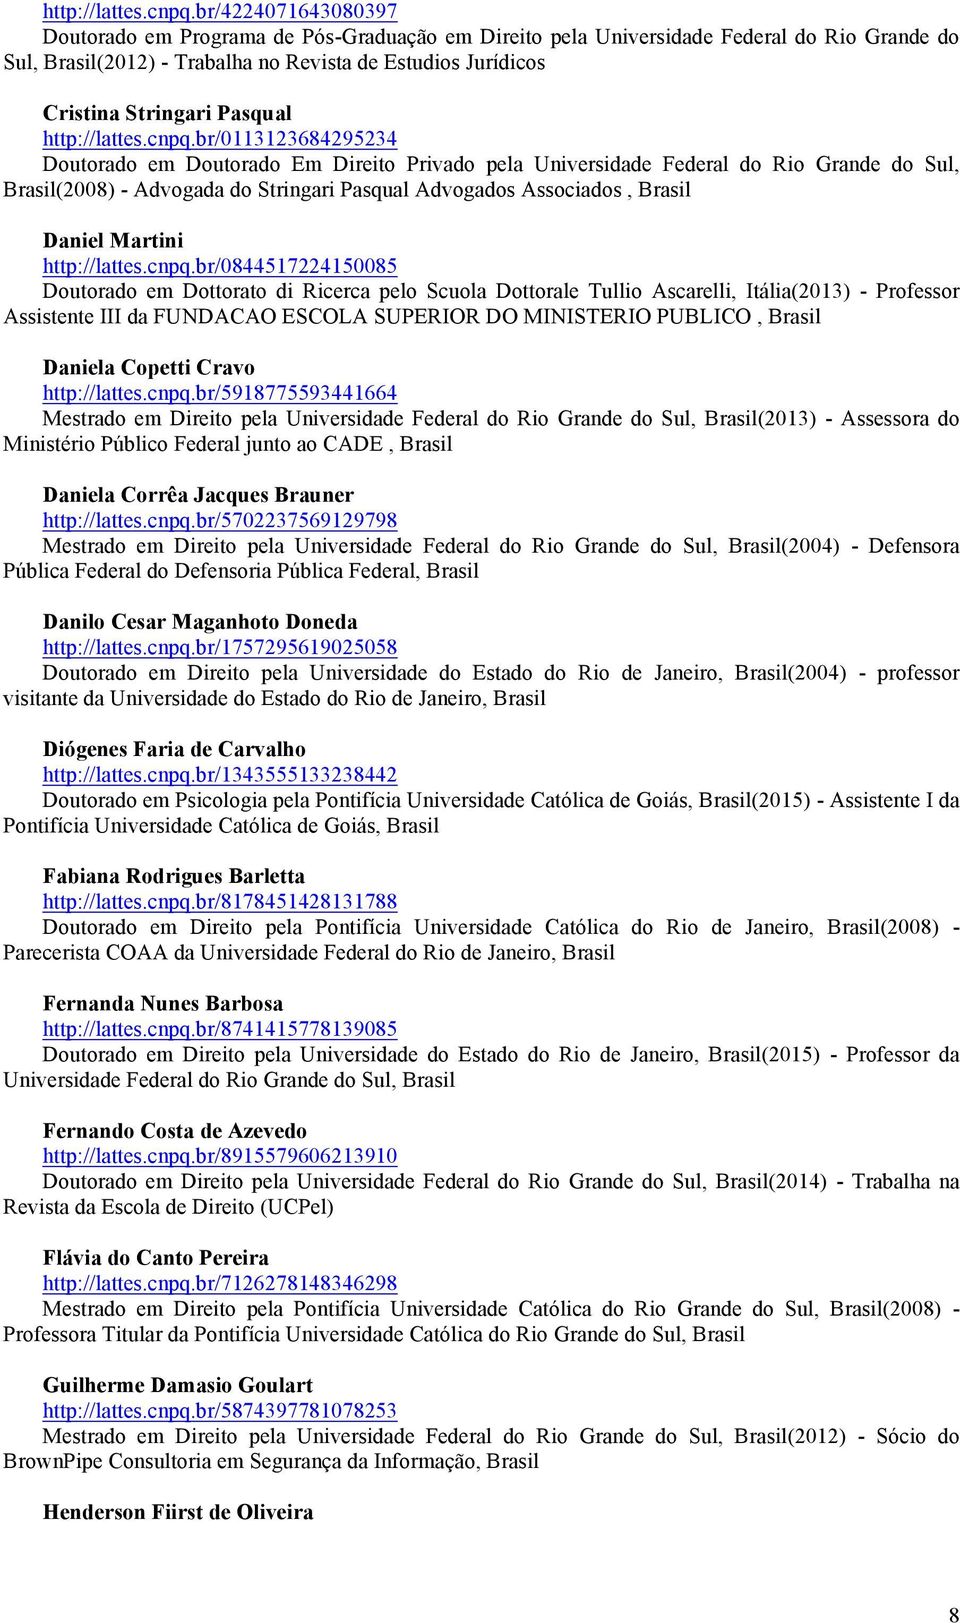 Pasqual br/0113123684295234 Doutorado em Doutorado Em Direito Privado pela Universidade Federal do Rio Grande do Sul, Brasil(2008) - Advogada do Stringari Pasqual Advogados Associados, Brasil Daniel